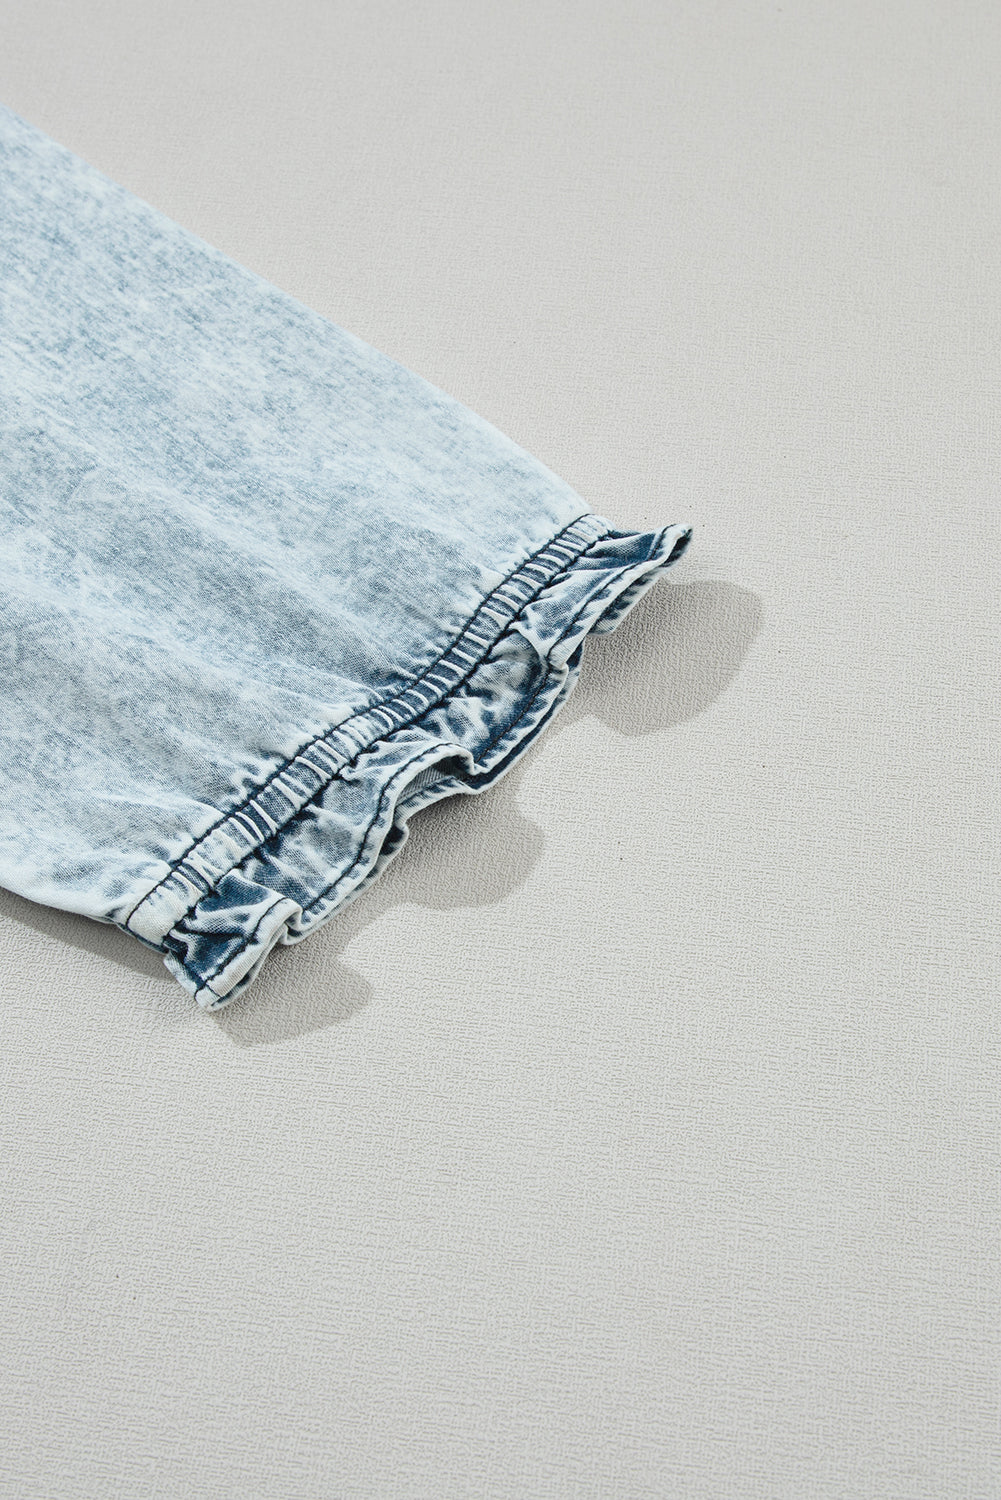 Halbärmliges, ausgestelltes Retro-Jeanskleid in Dämmerungsblau mit Acid-Waschung